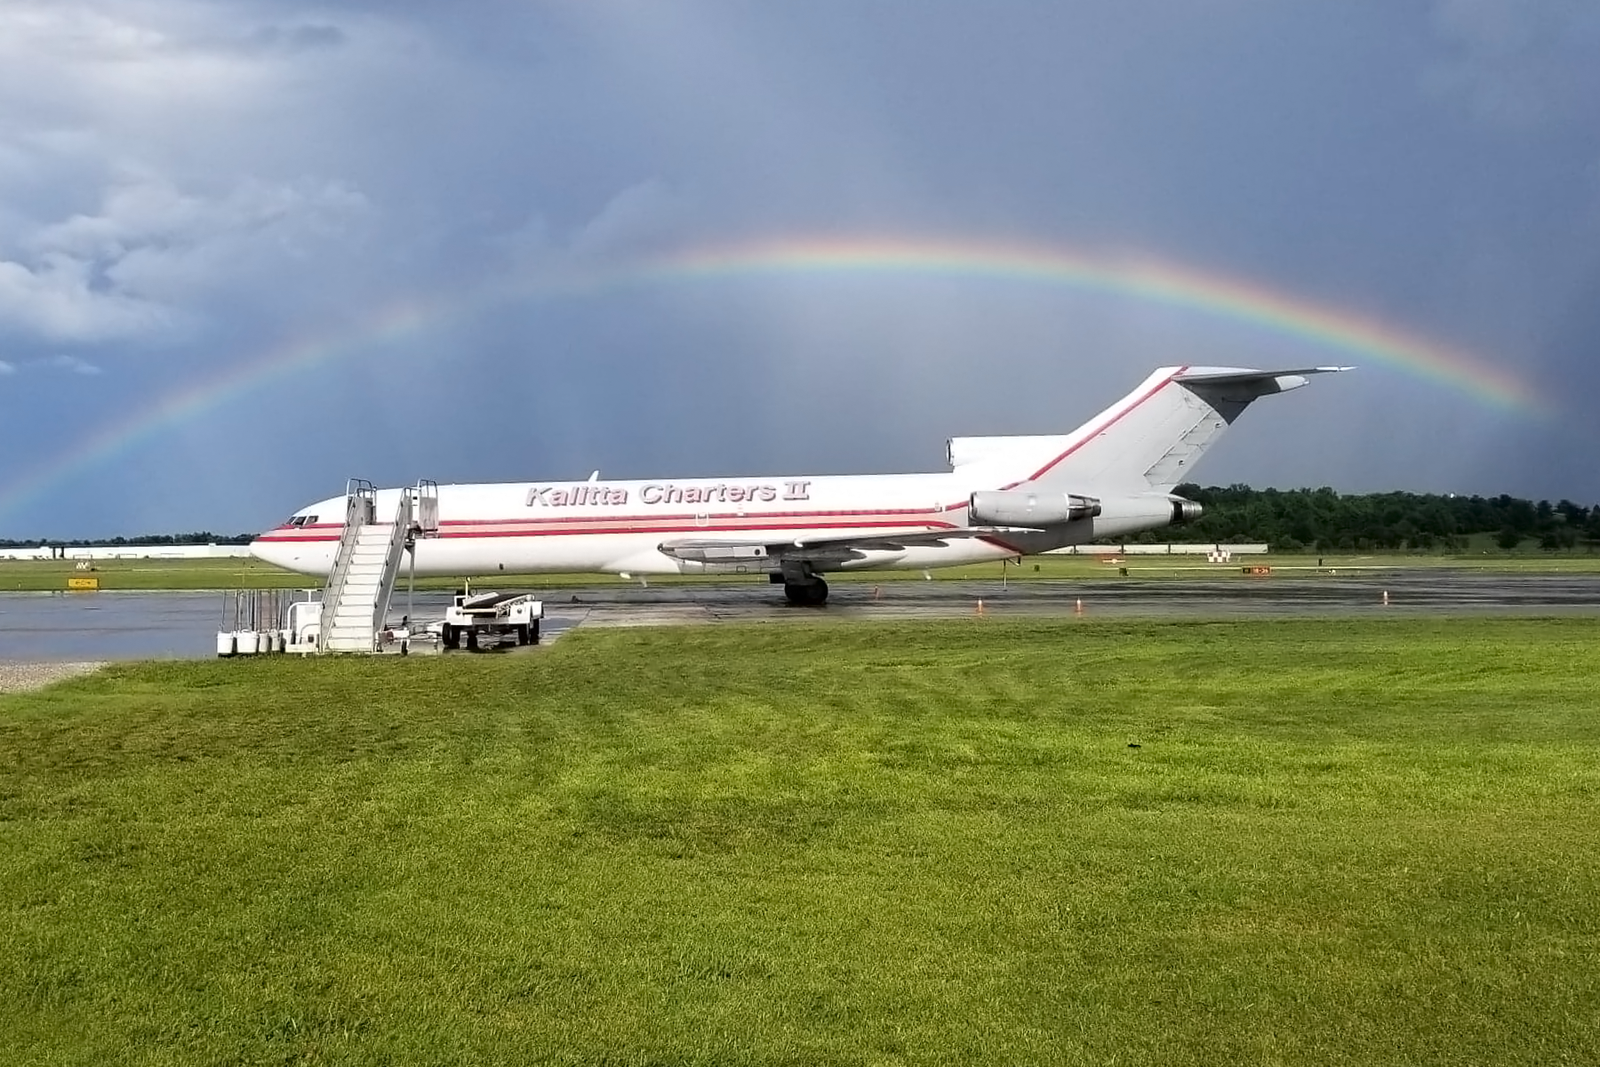 Uno de los Boeing 727 que operó la compañía a lo largo de los años. Foto: Kalitta Charters II